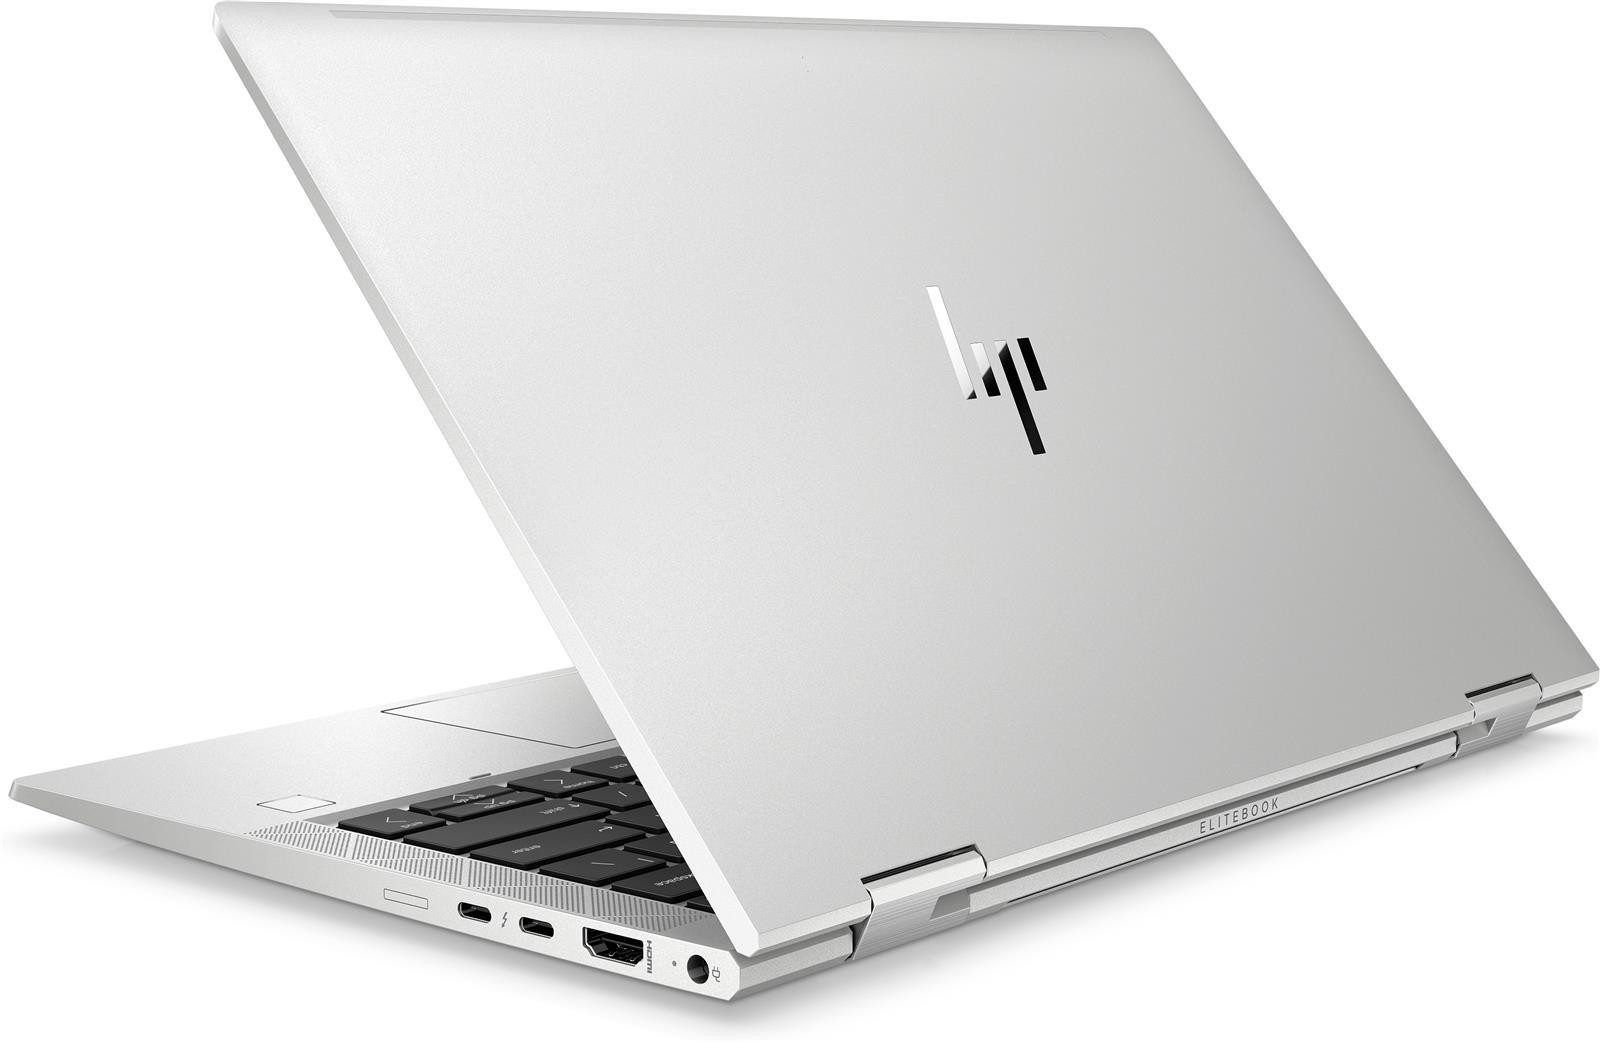 HP EliteBook x360 830 G7 13,3" FHD IPS Intel Core i5-10210U 16GB 1TB SSD Win 10 Pro